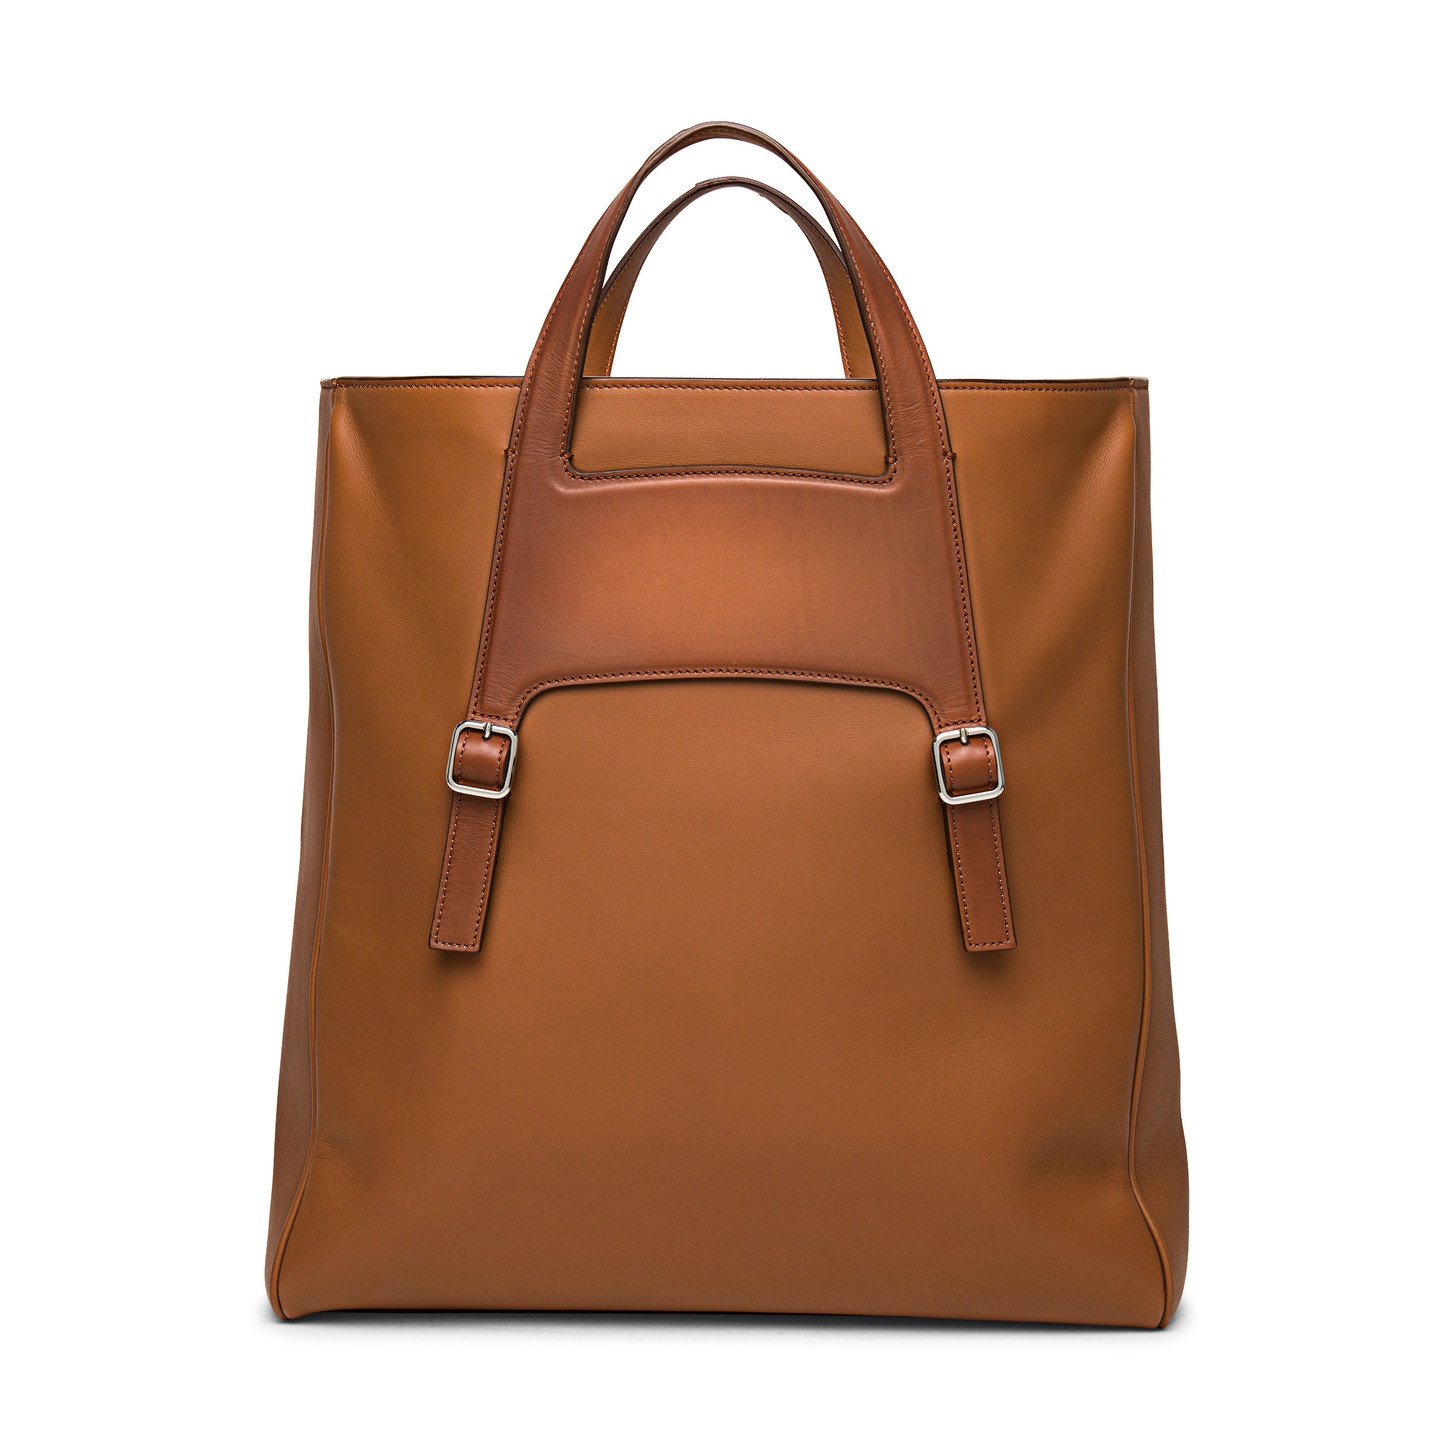 Brown leather handbag - 2